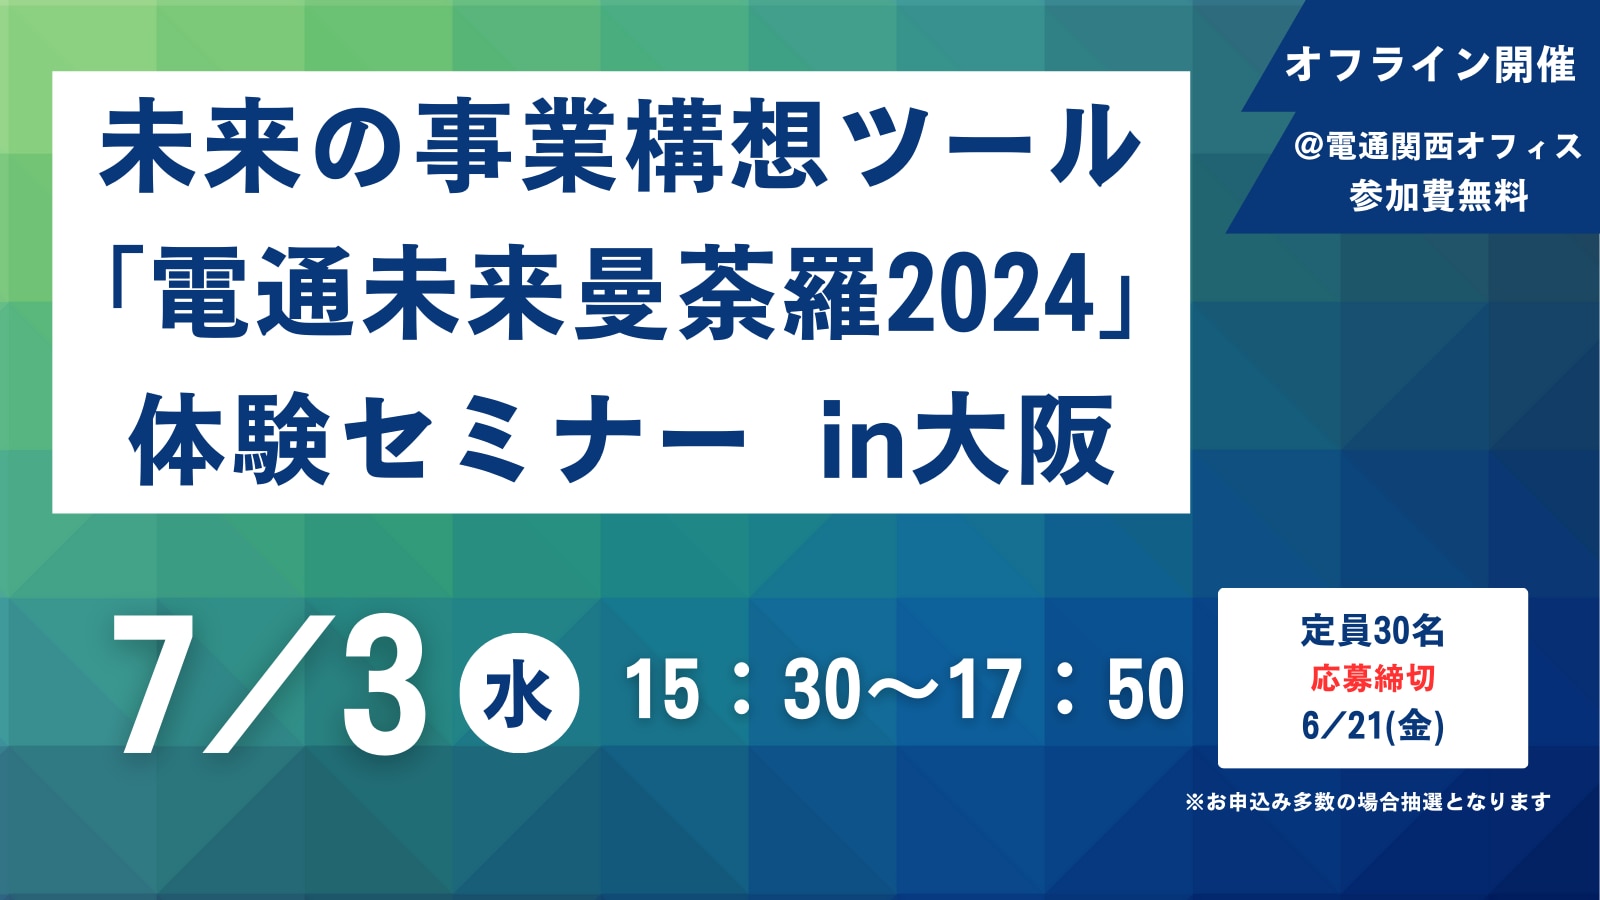 未来の事業構想ツール「電通未来曼荼羅2024」体験セミナー in 大阪 